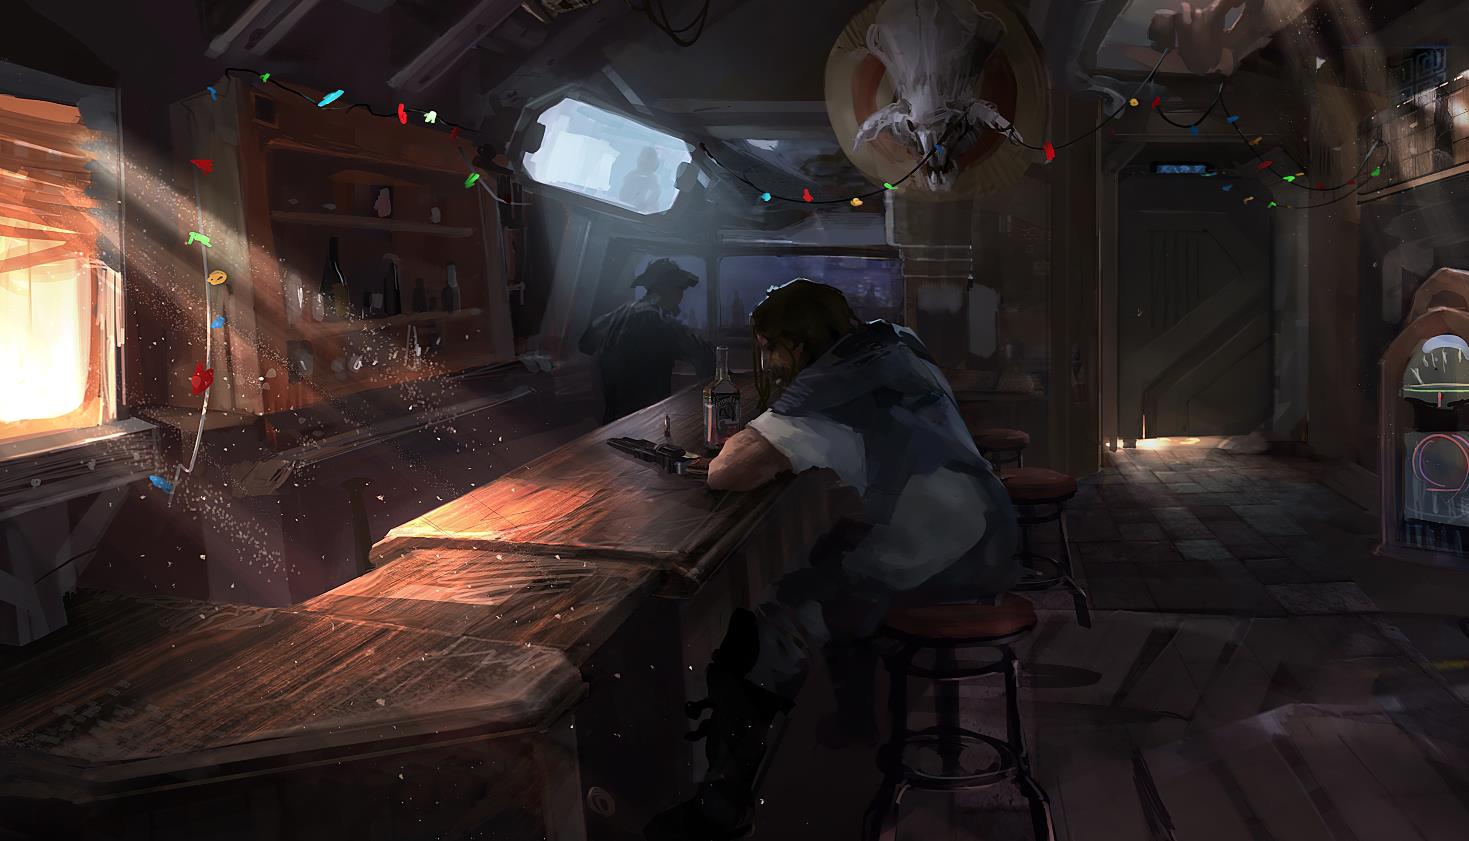 《Wallpaper Engine》星际争霸2酒吧中的雷诺绘图动态壁纸